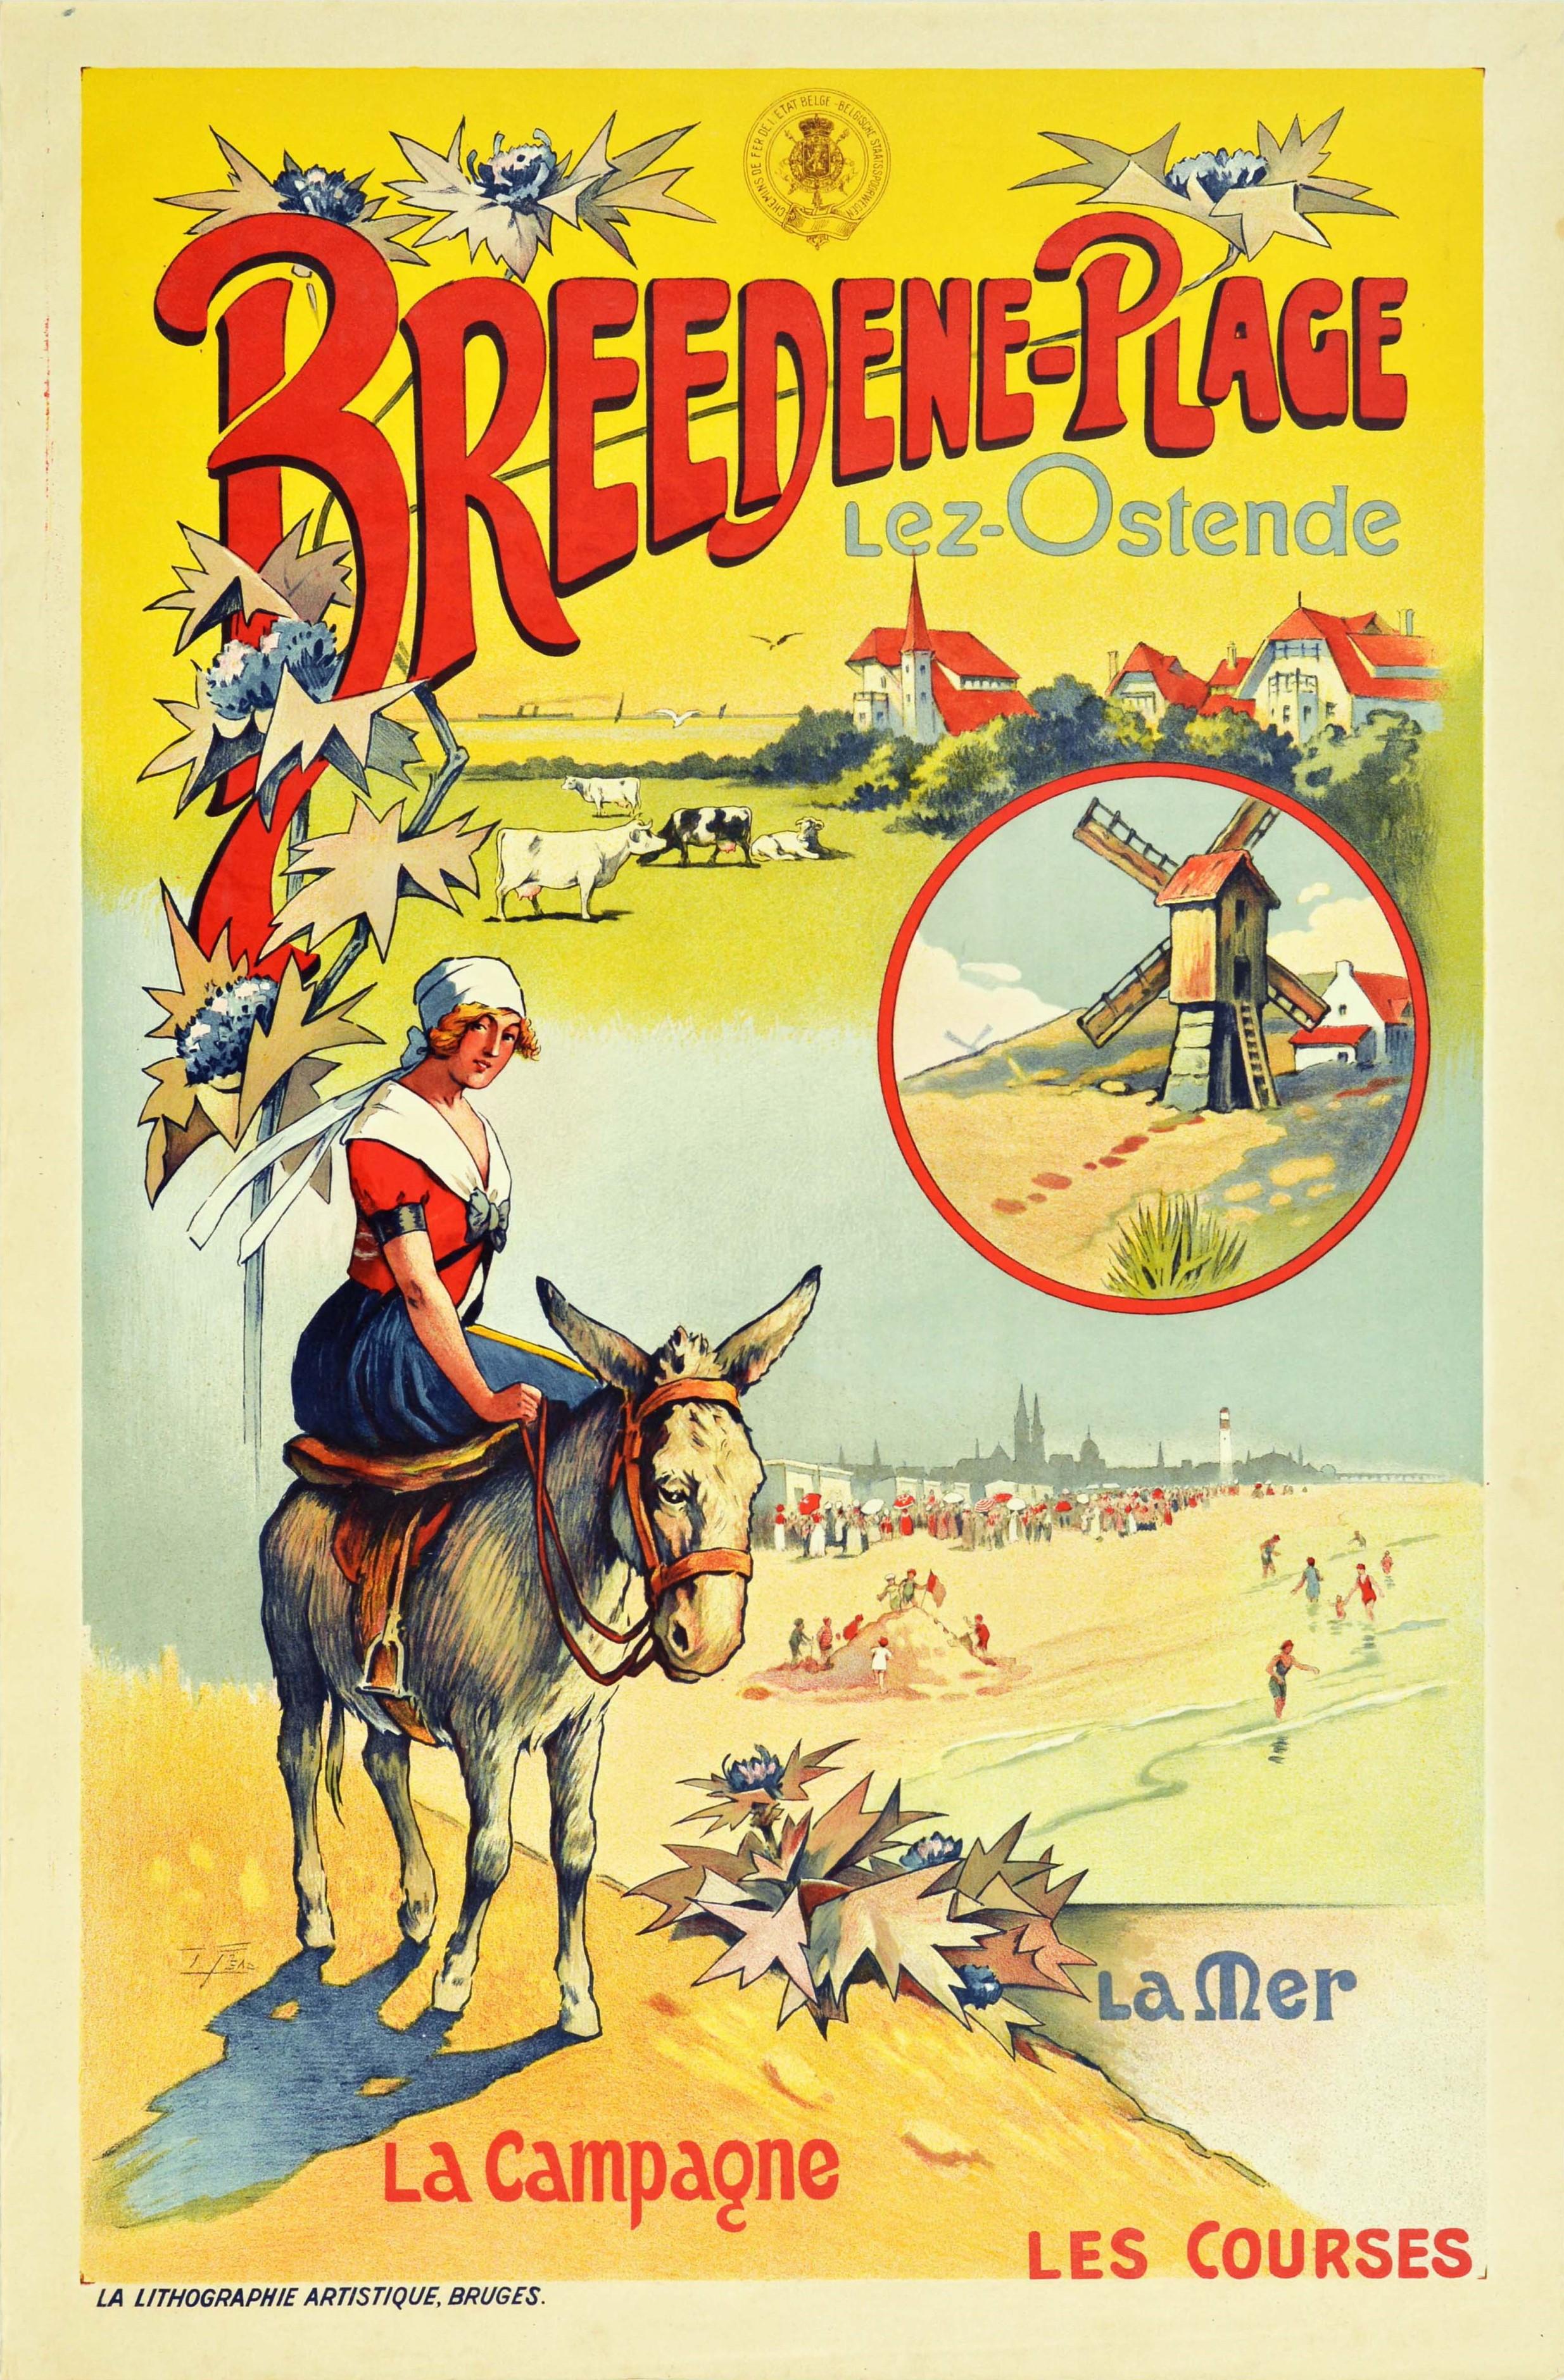 Unknown Print – Original Antikes Eisenbahn-Reiseplakat Breedene Plage Lez Ostende Strand Belgien 